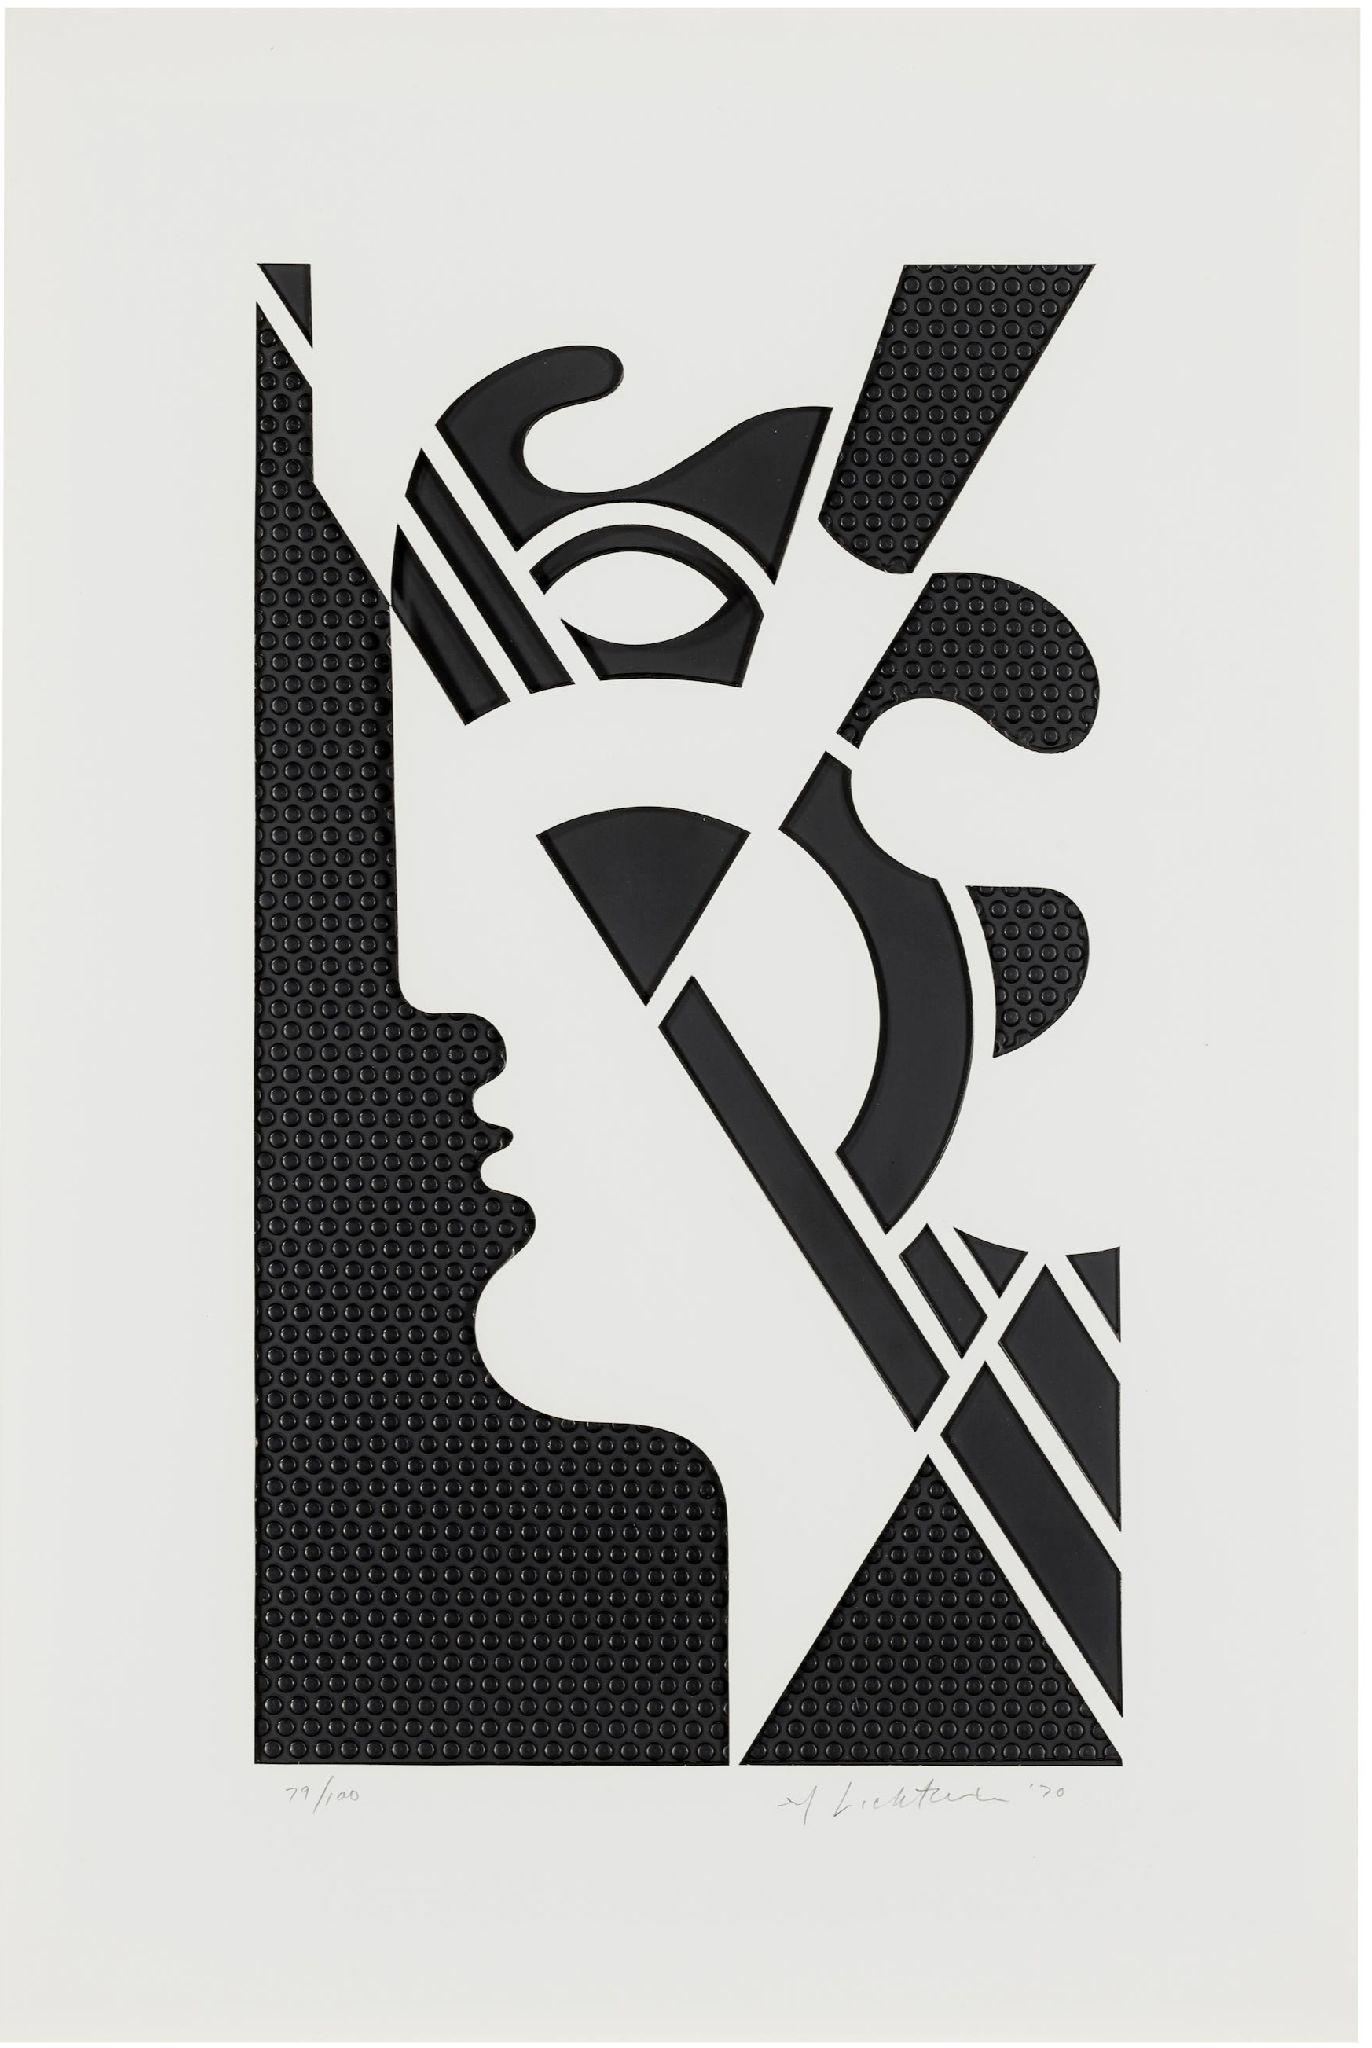 Moderner Kopf #5
1970
Geprägtes Graphit mit gestanztem Strathmore-Papier, montiert in weiß lackiertem Aluminiumrahmen mit hölzernem Keilrahmen
Signiert, datiert und nummeriert mit Bleistift
Herausgeber: Gemini G.E.L., Los Angeles
Corlett 95